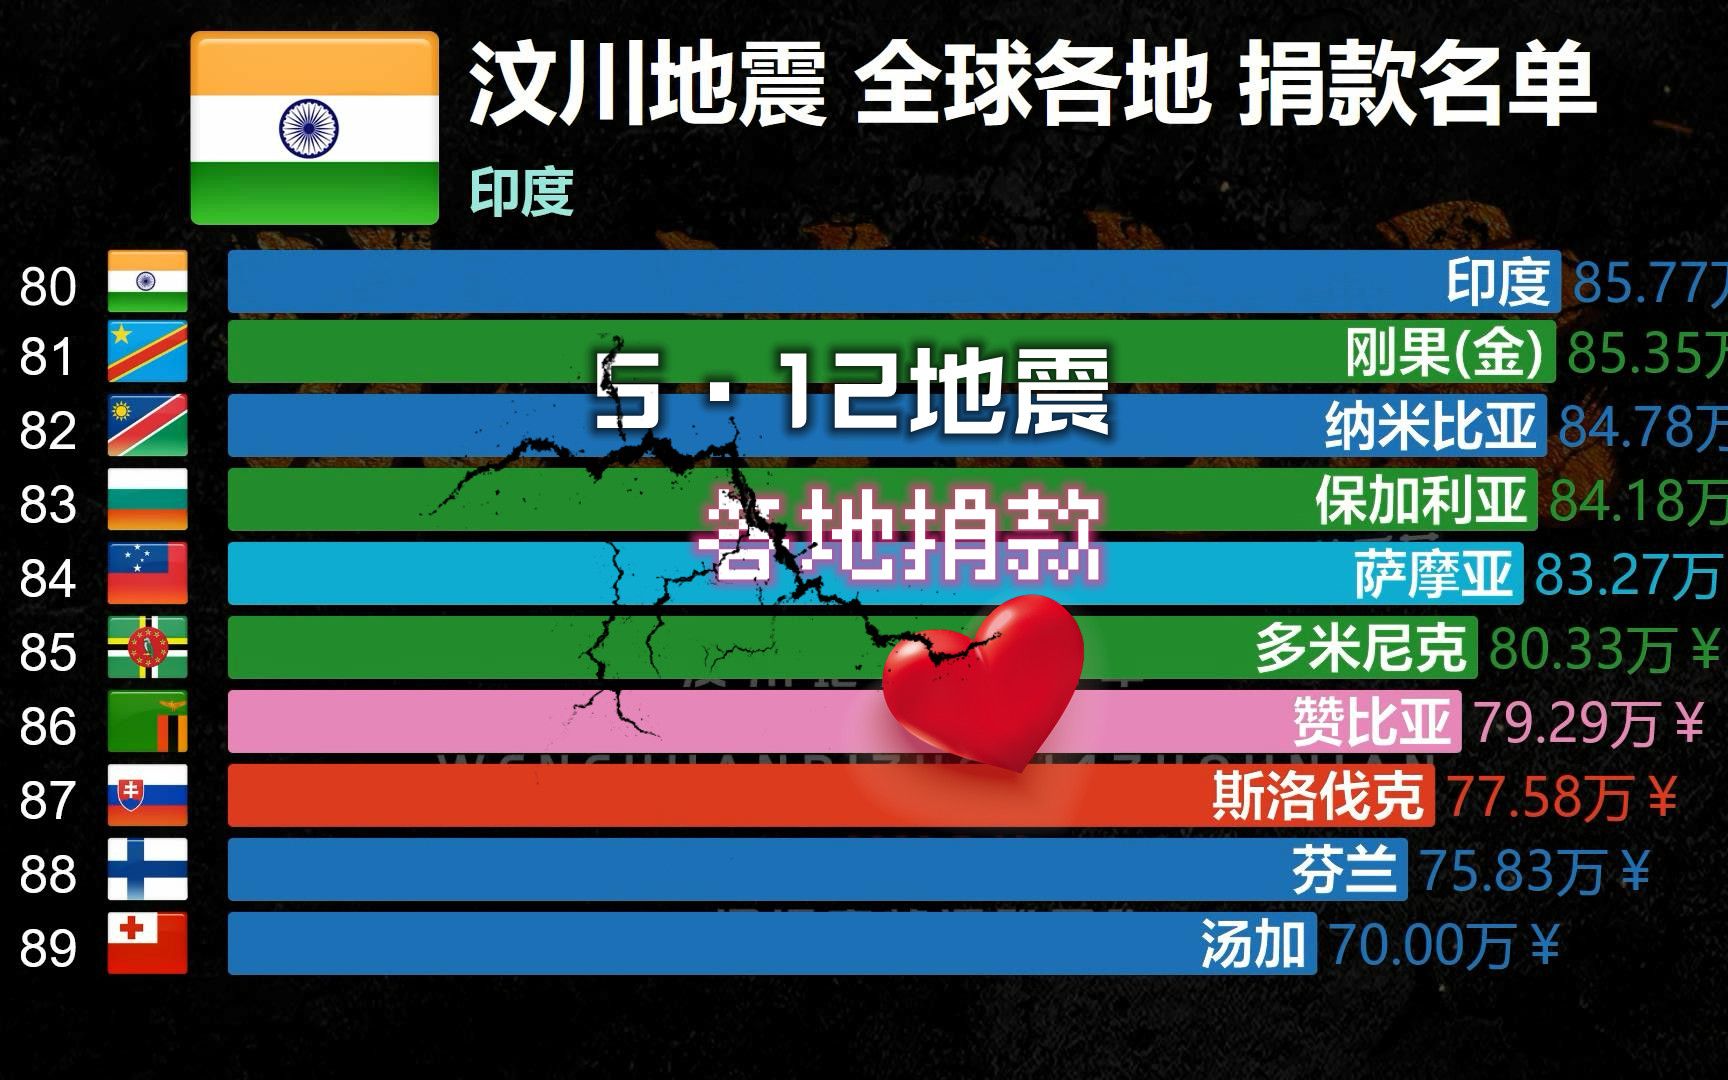 14年前汶川地震 全球华人这十大画面泪目：再痛我们都一起扛